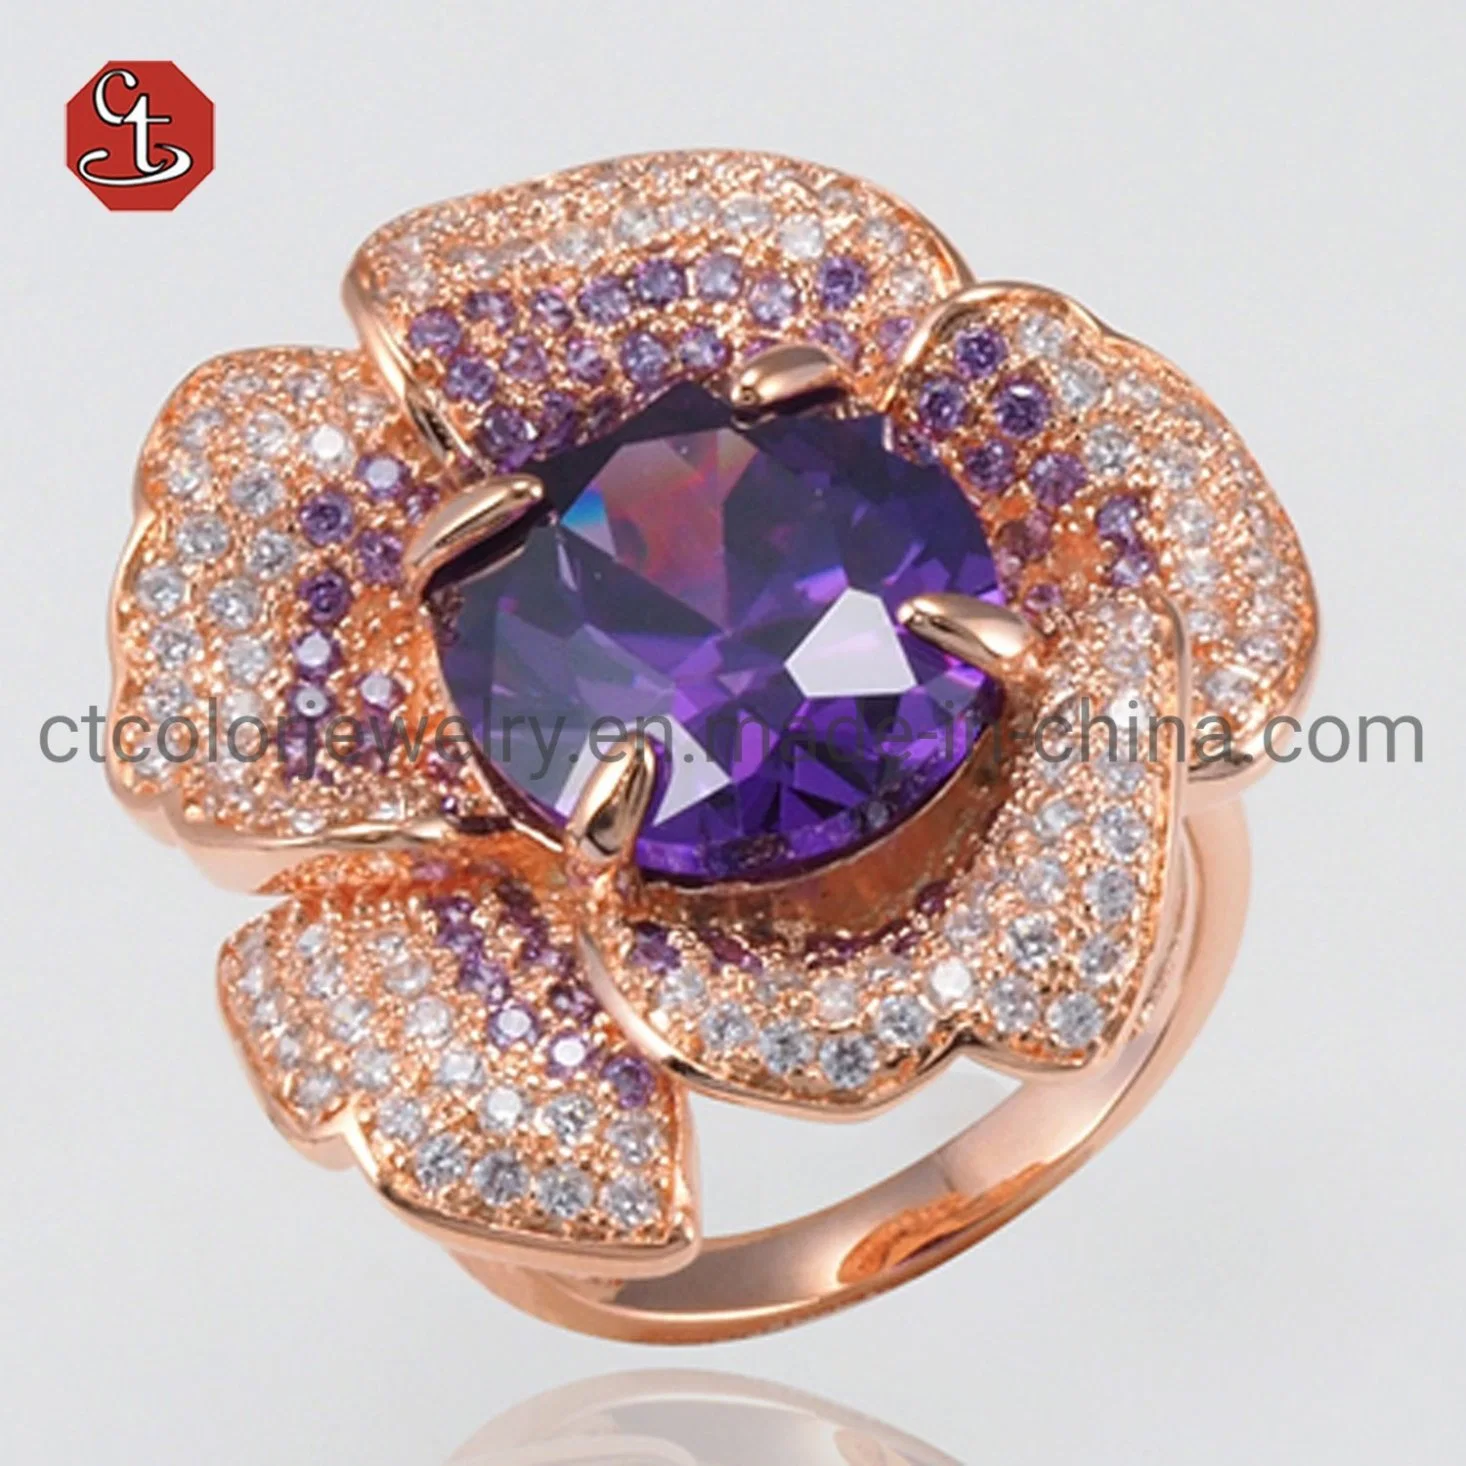 Luxus Edelstein Schmuck Rose Gold Blume Silber Amethyst/Rubin Ring